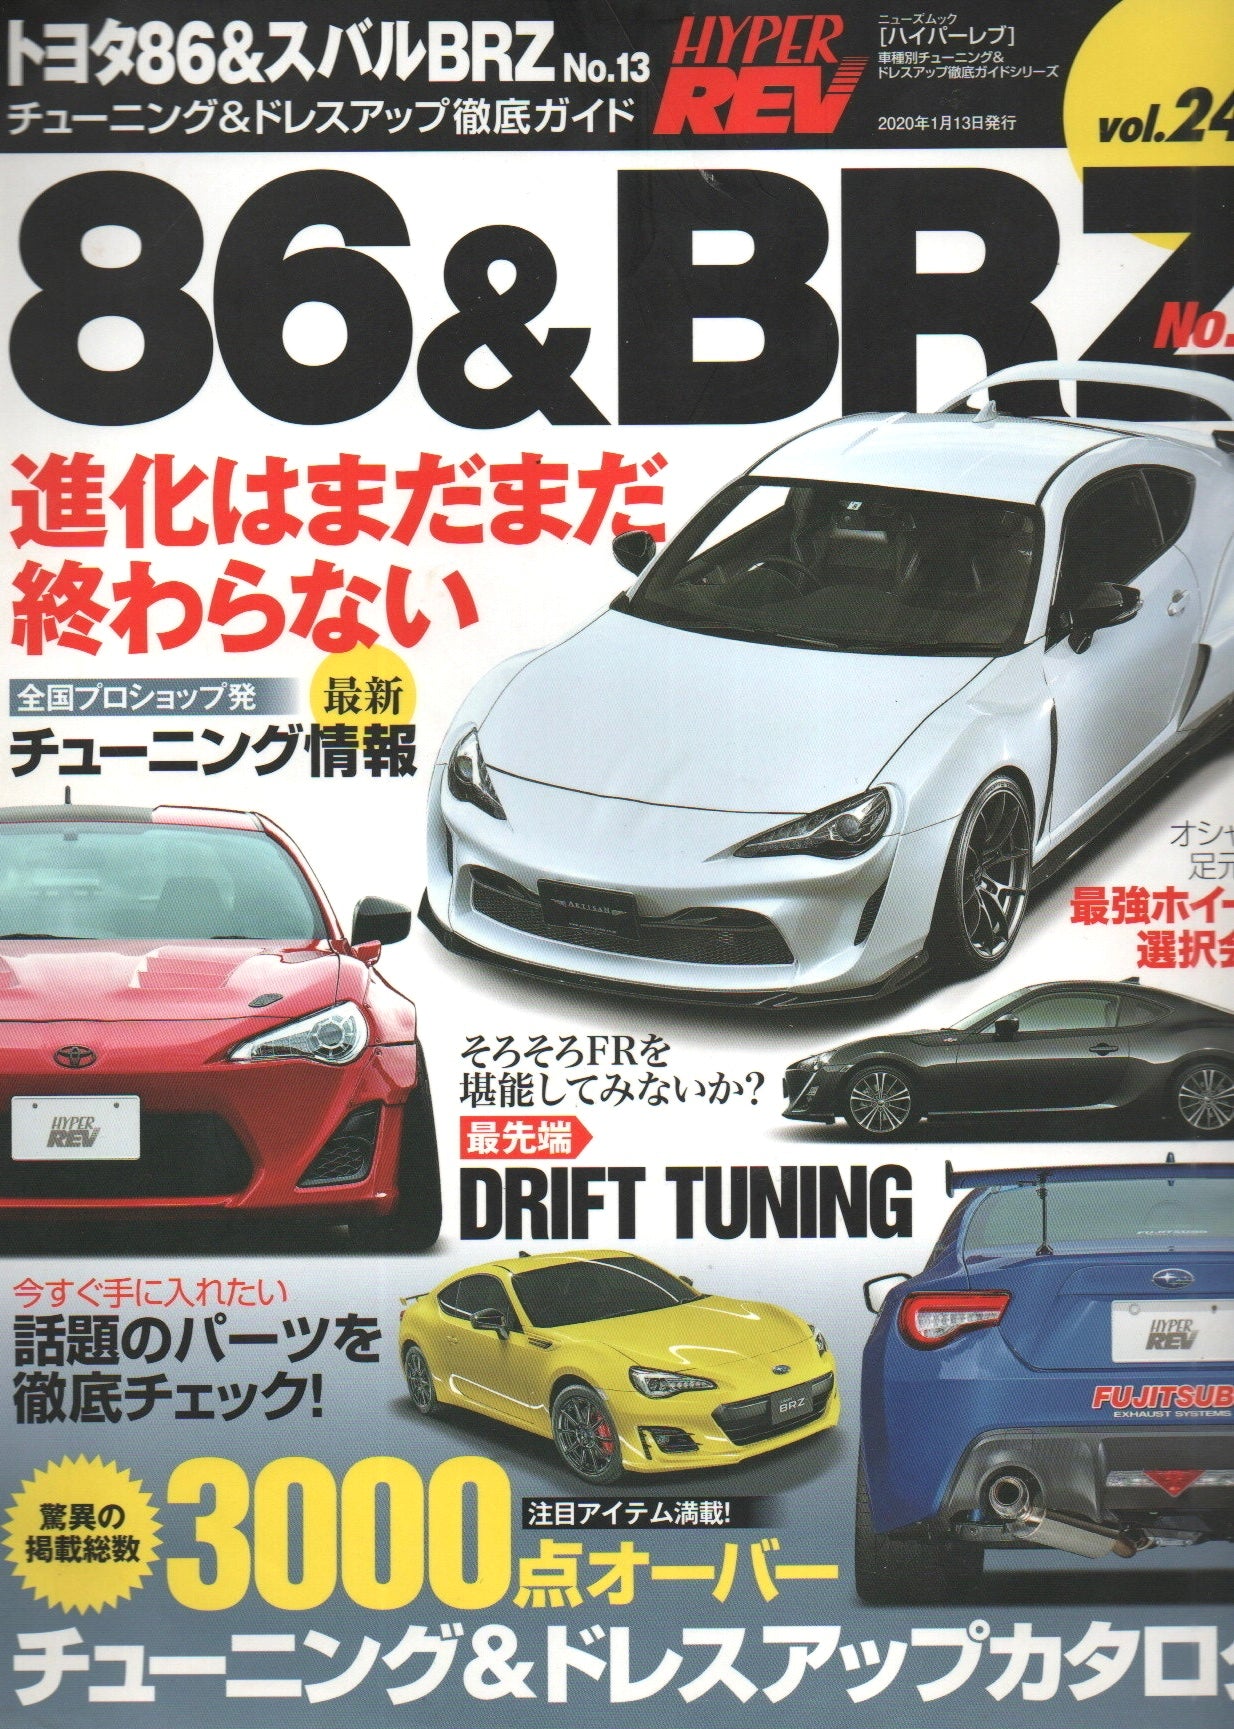 86 Super Rev Magazine (Style & Drift)